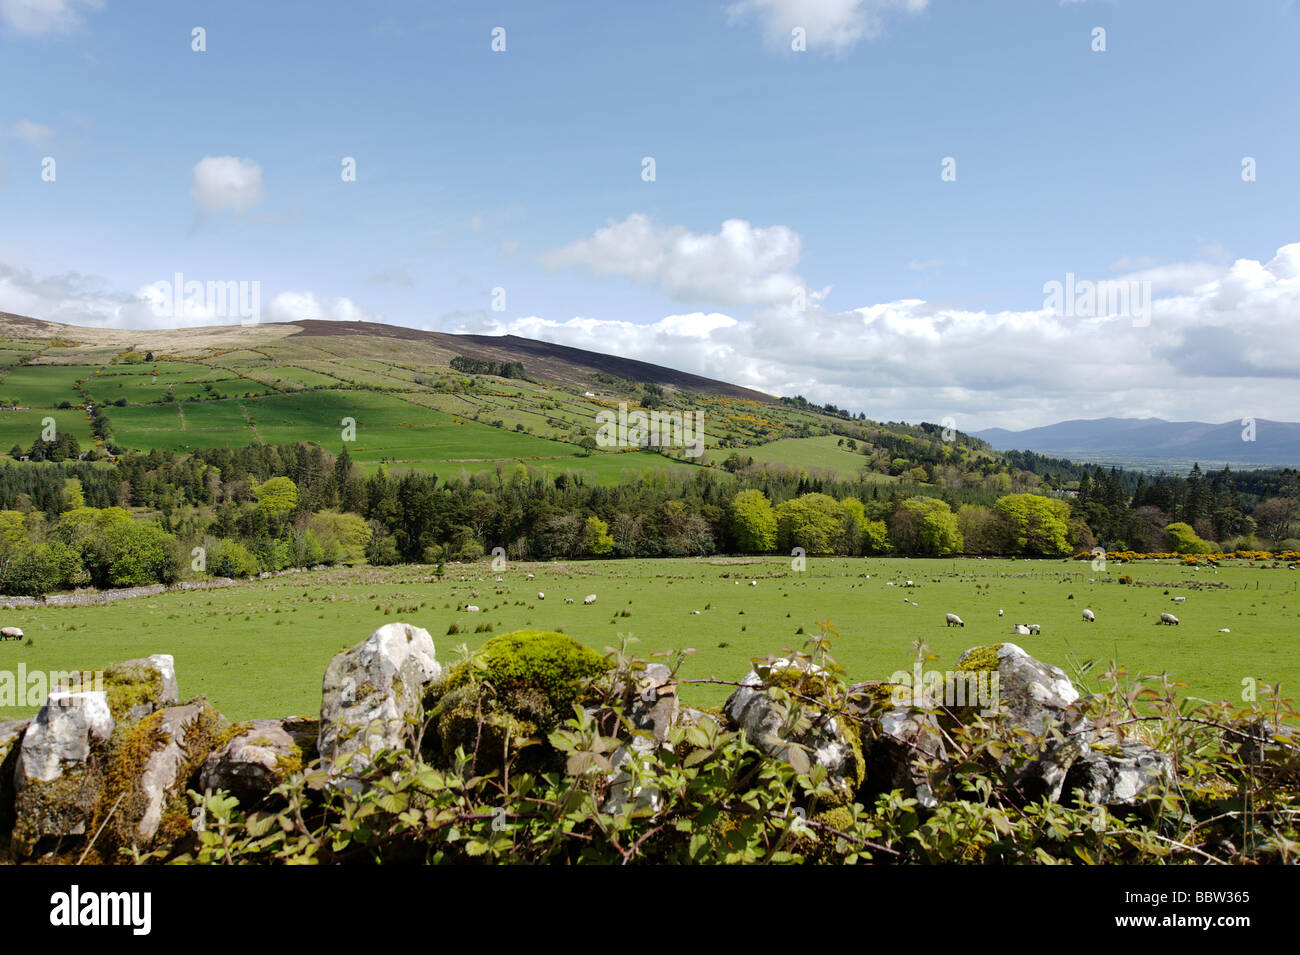 Mit Blick auf Trockenmauer, grünen Hügeln und Ackerland in der Umgebung von Clonmel im County Tipperary Südirland Stockfoto